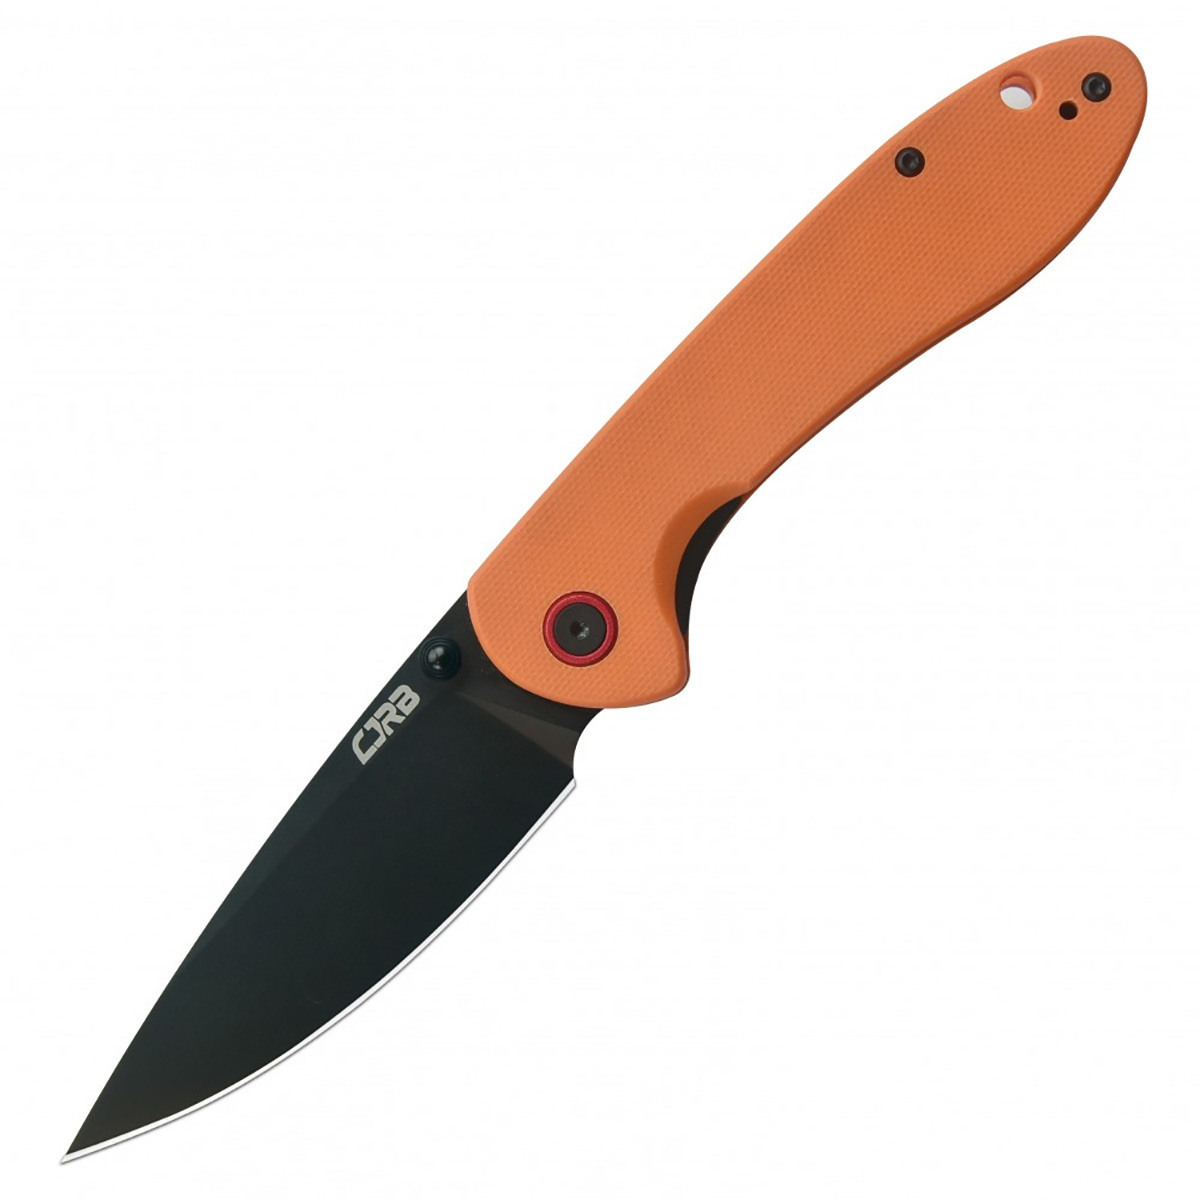 Складной нож CJRB Feldspar, сталь AR-RPM9, G10, оранжевый, Бренды, CJRB Cutlery